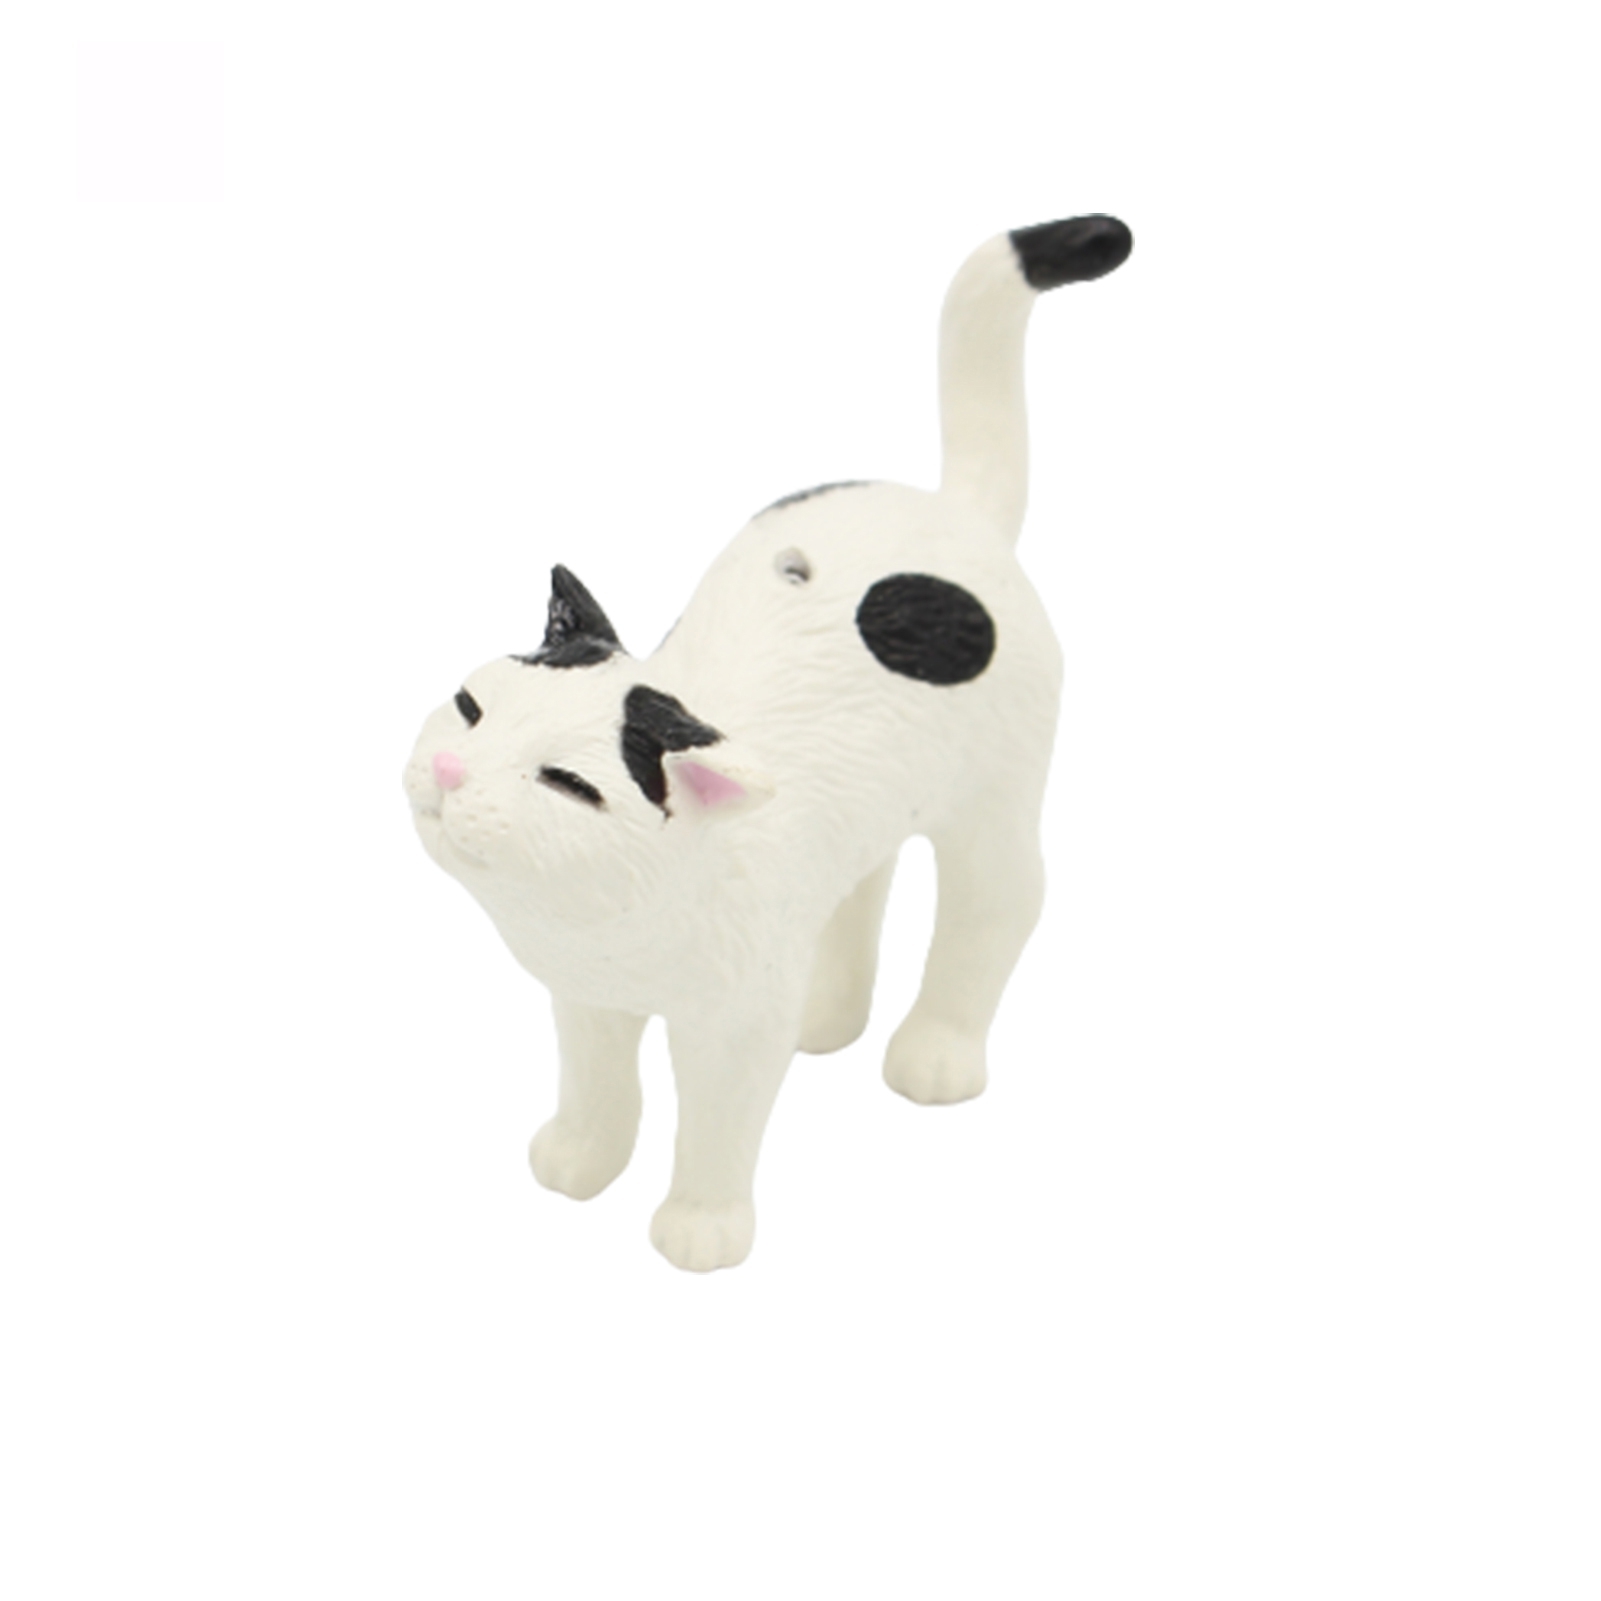 Микро кошки. Фигурки кошек для кукольных домиков. Модель кошки. Мини кошечки с котятами фигурки. Cat model 980018.